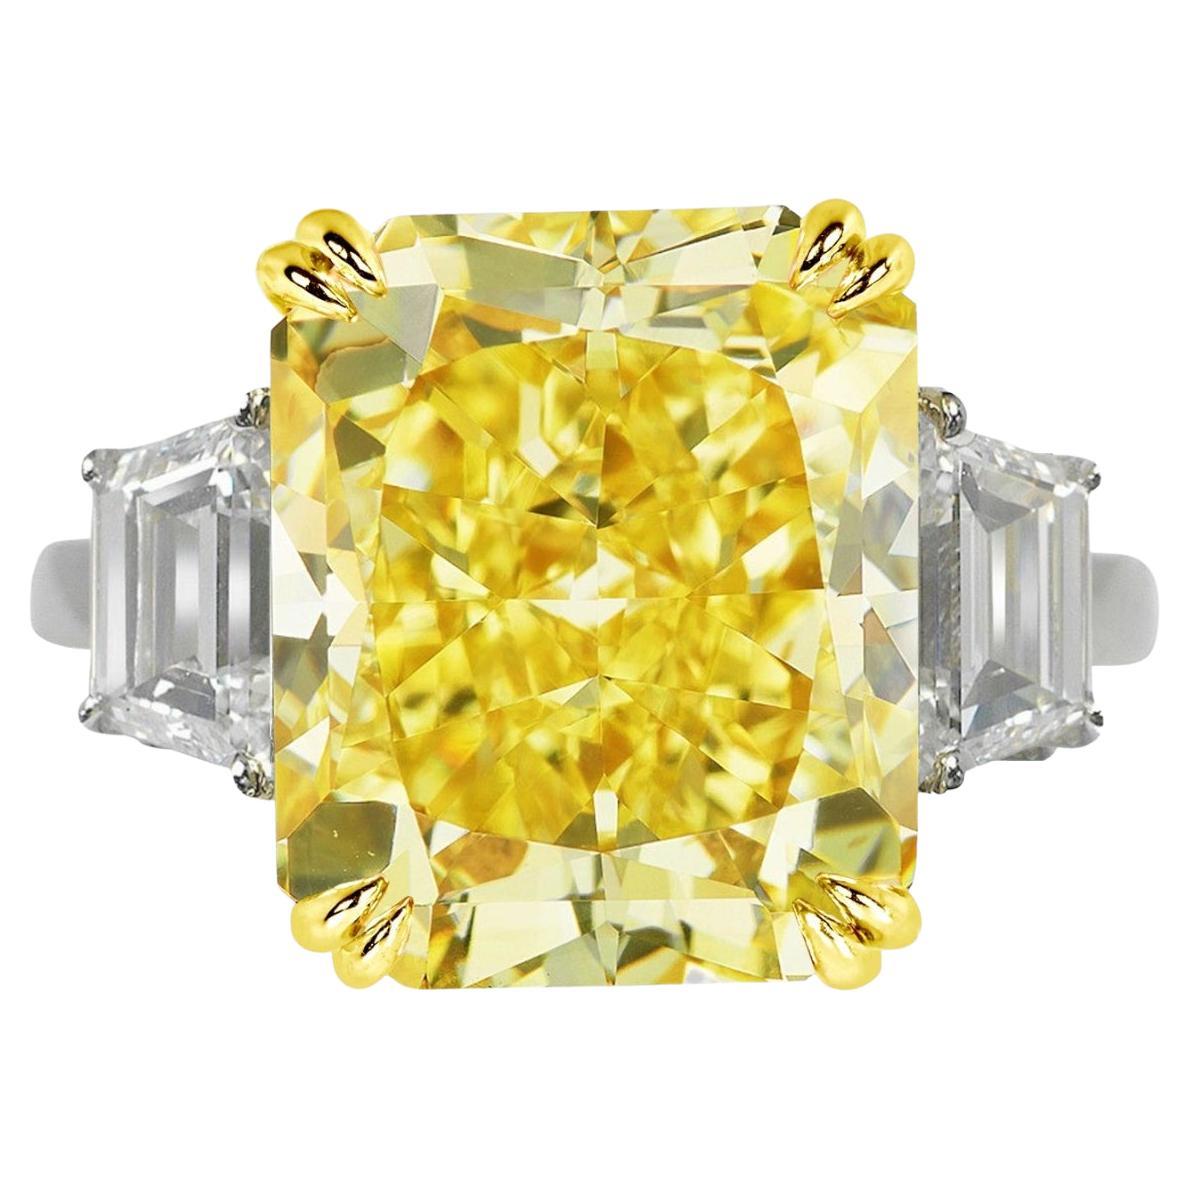 GIA-zertifizierter 5 Karat gelber Fancy-Diamantring mit strahlender Reinheit